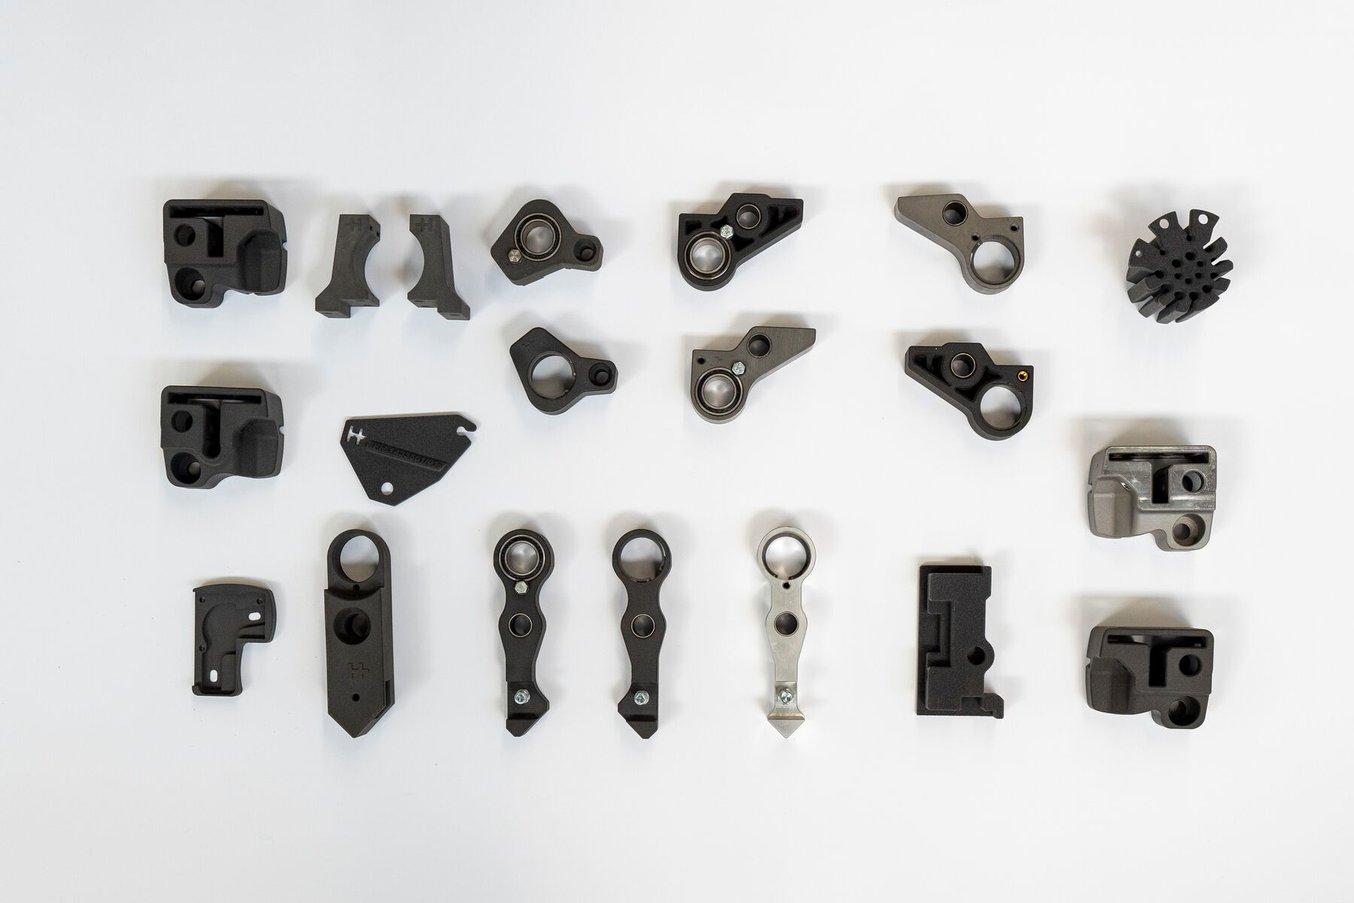 Chez HEIDELBERG, les pièces imprimées en 3D sont utilisées pour une large gamme d'applications, comme des pièces légères pour les robots ou des pièces de rechange pour les composants de machines qui étaient auparavant fabriqués en acier.